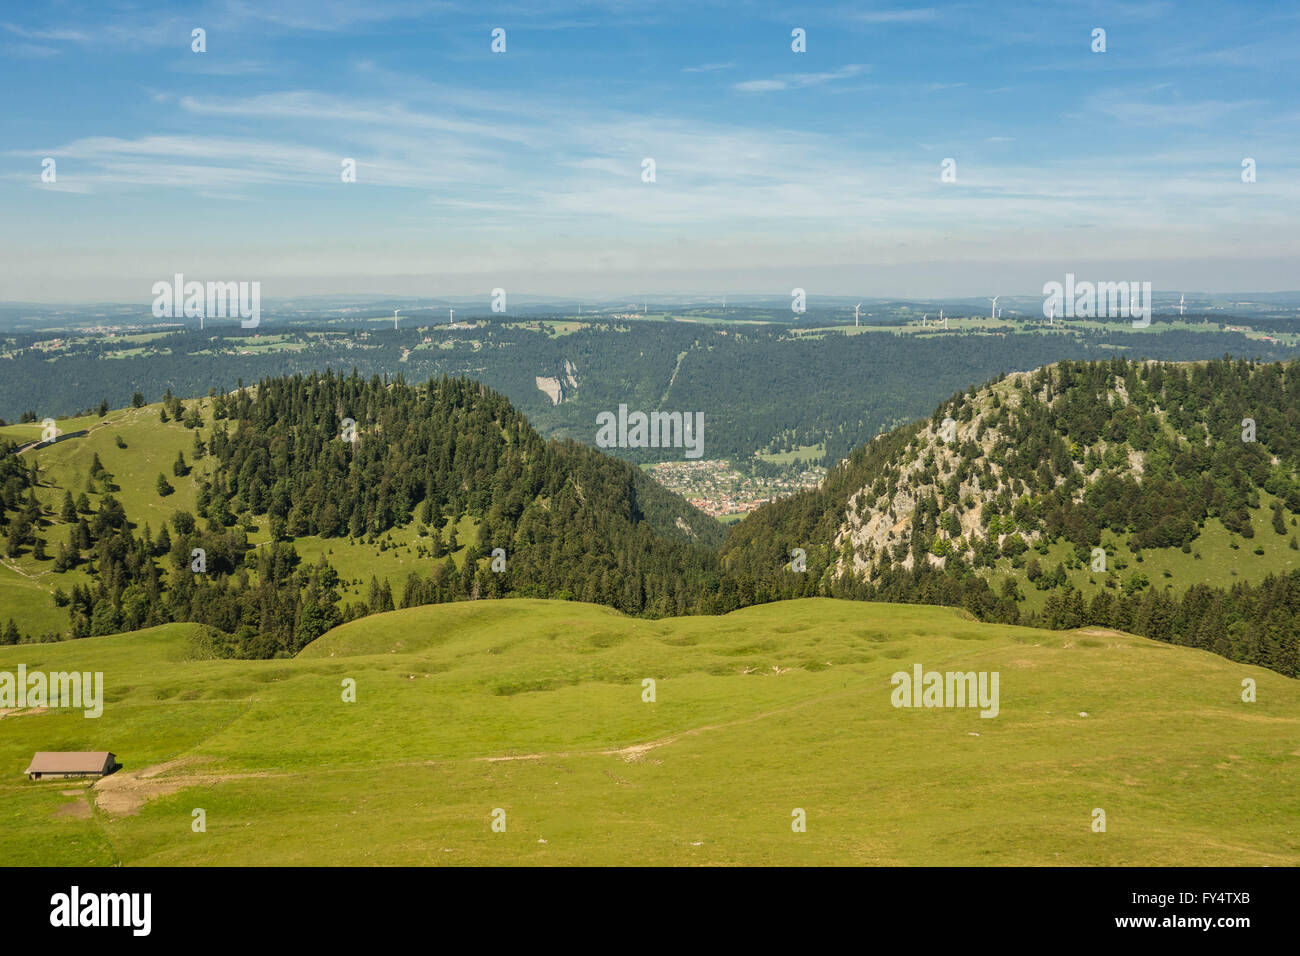 Switzerland, Jura, view from above Stock Photo